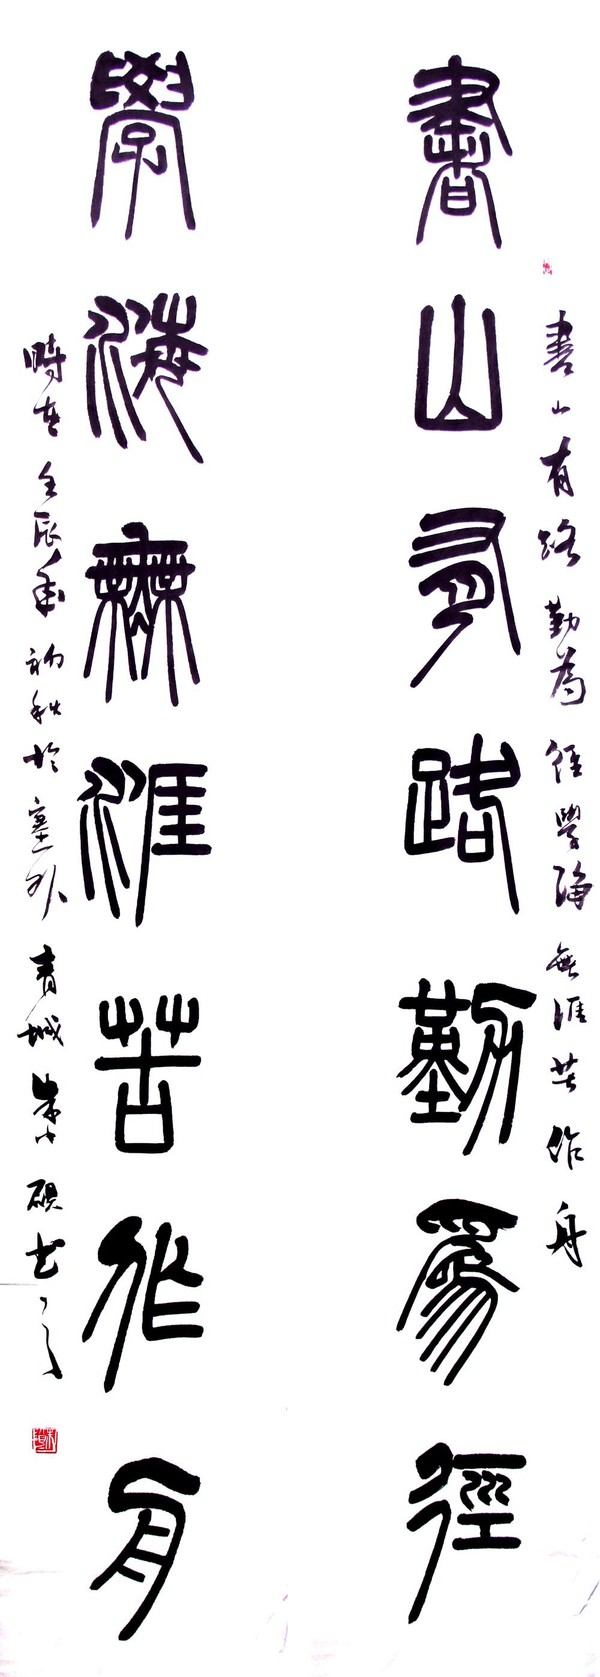 “献给春天的诗”--朱小砚书法作品展在宋庄伍佰艺美术馆开幕